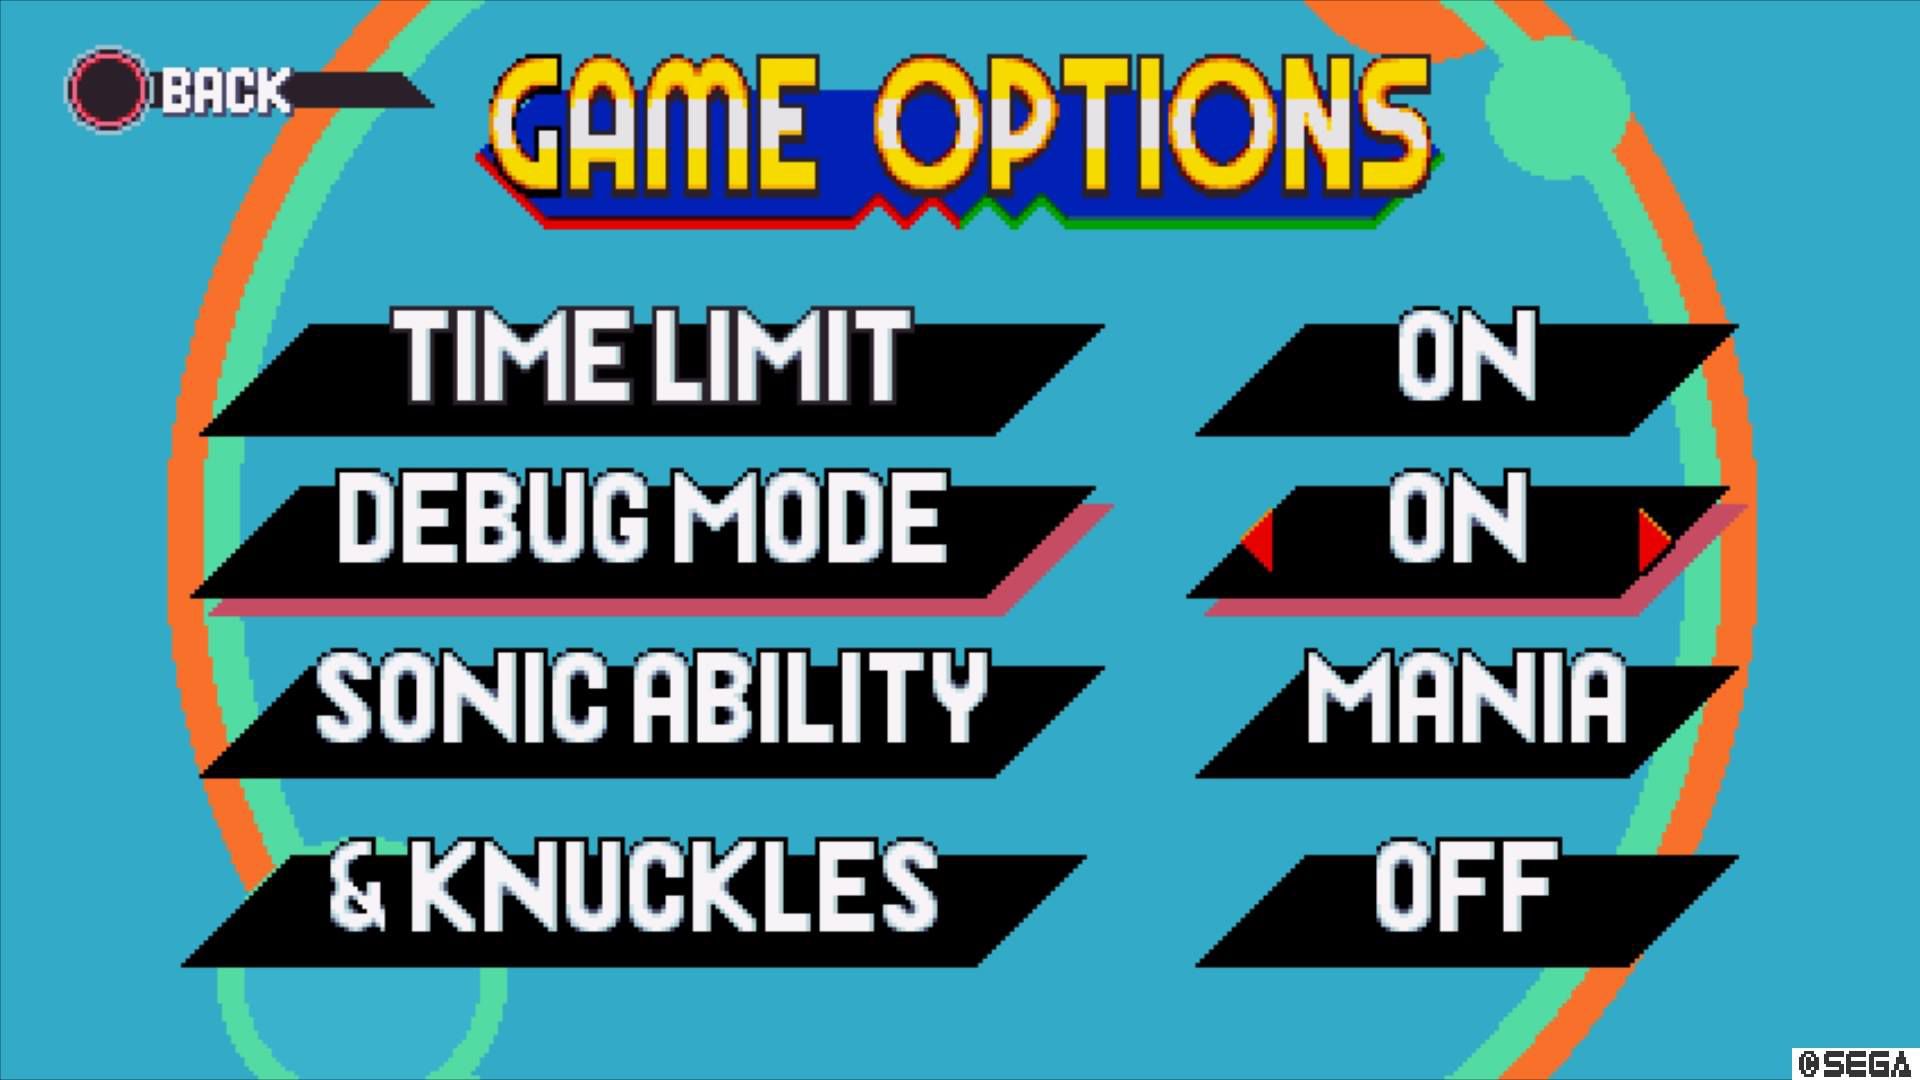 Pressione o botão de opções do jogo e ative o modo Debug.